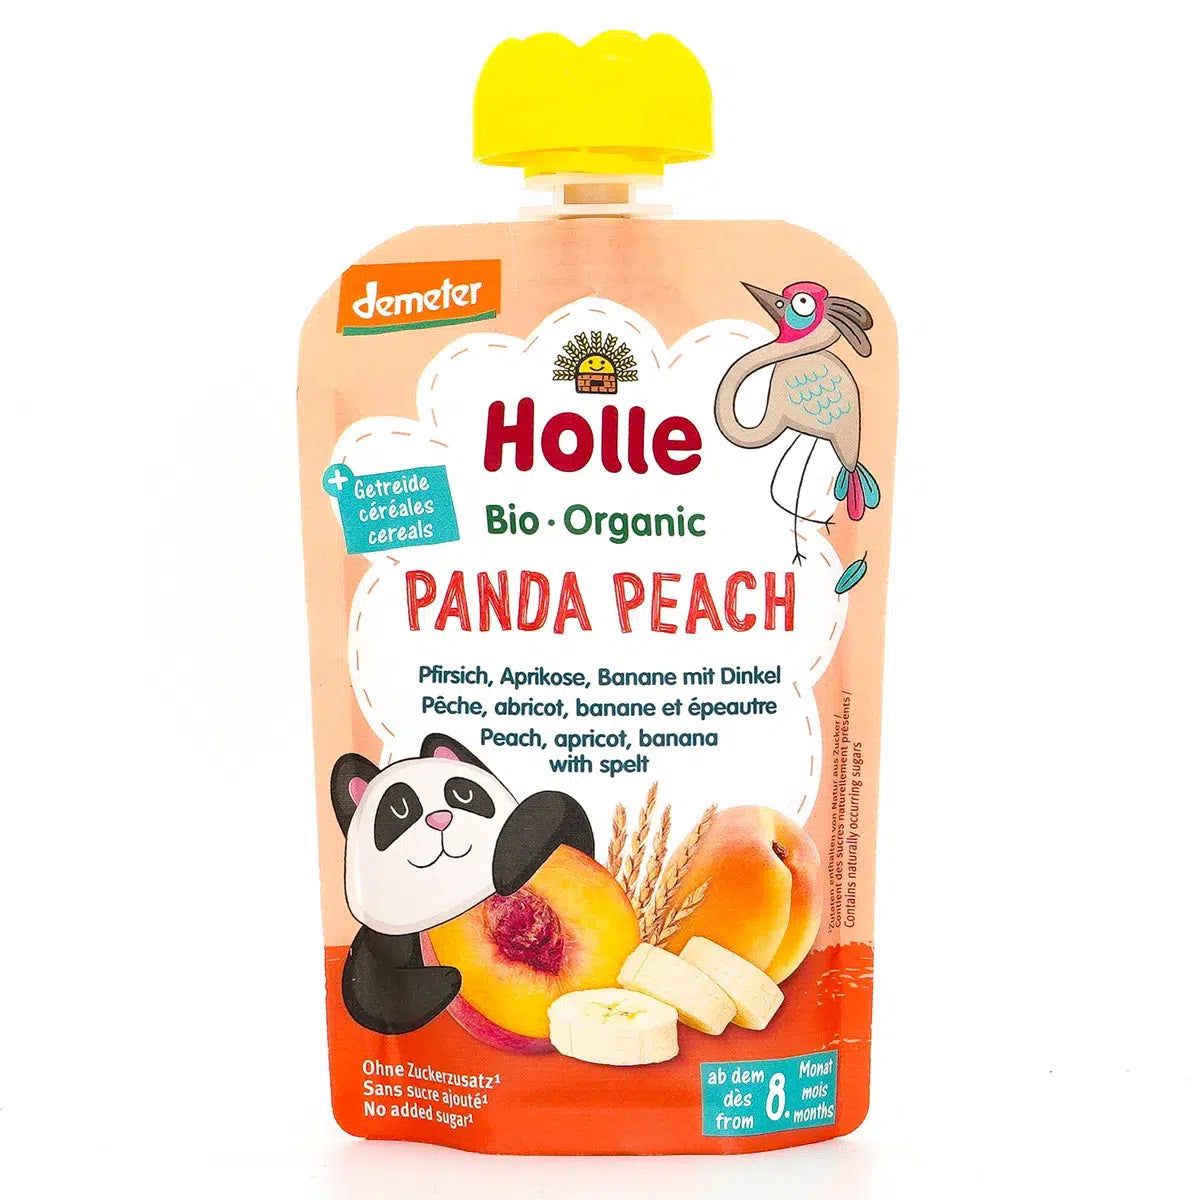 Holle Panda Peach: Peach, Apricot, Banana & Spelt (8+ Months) - 12 Pouches